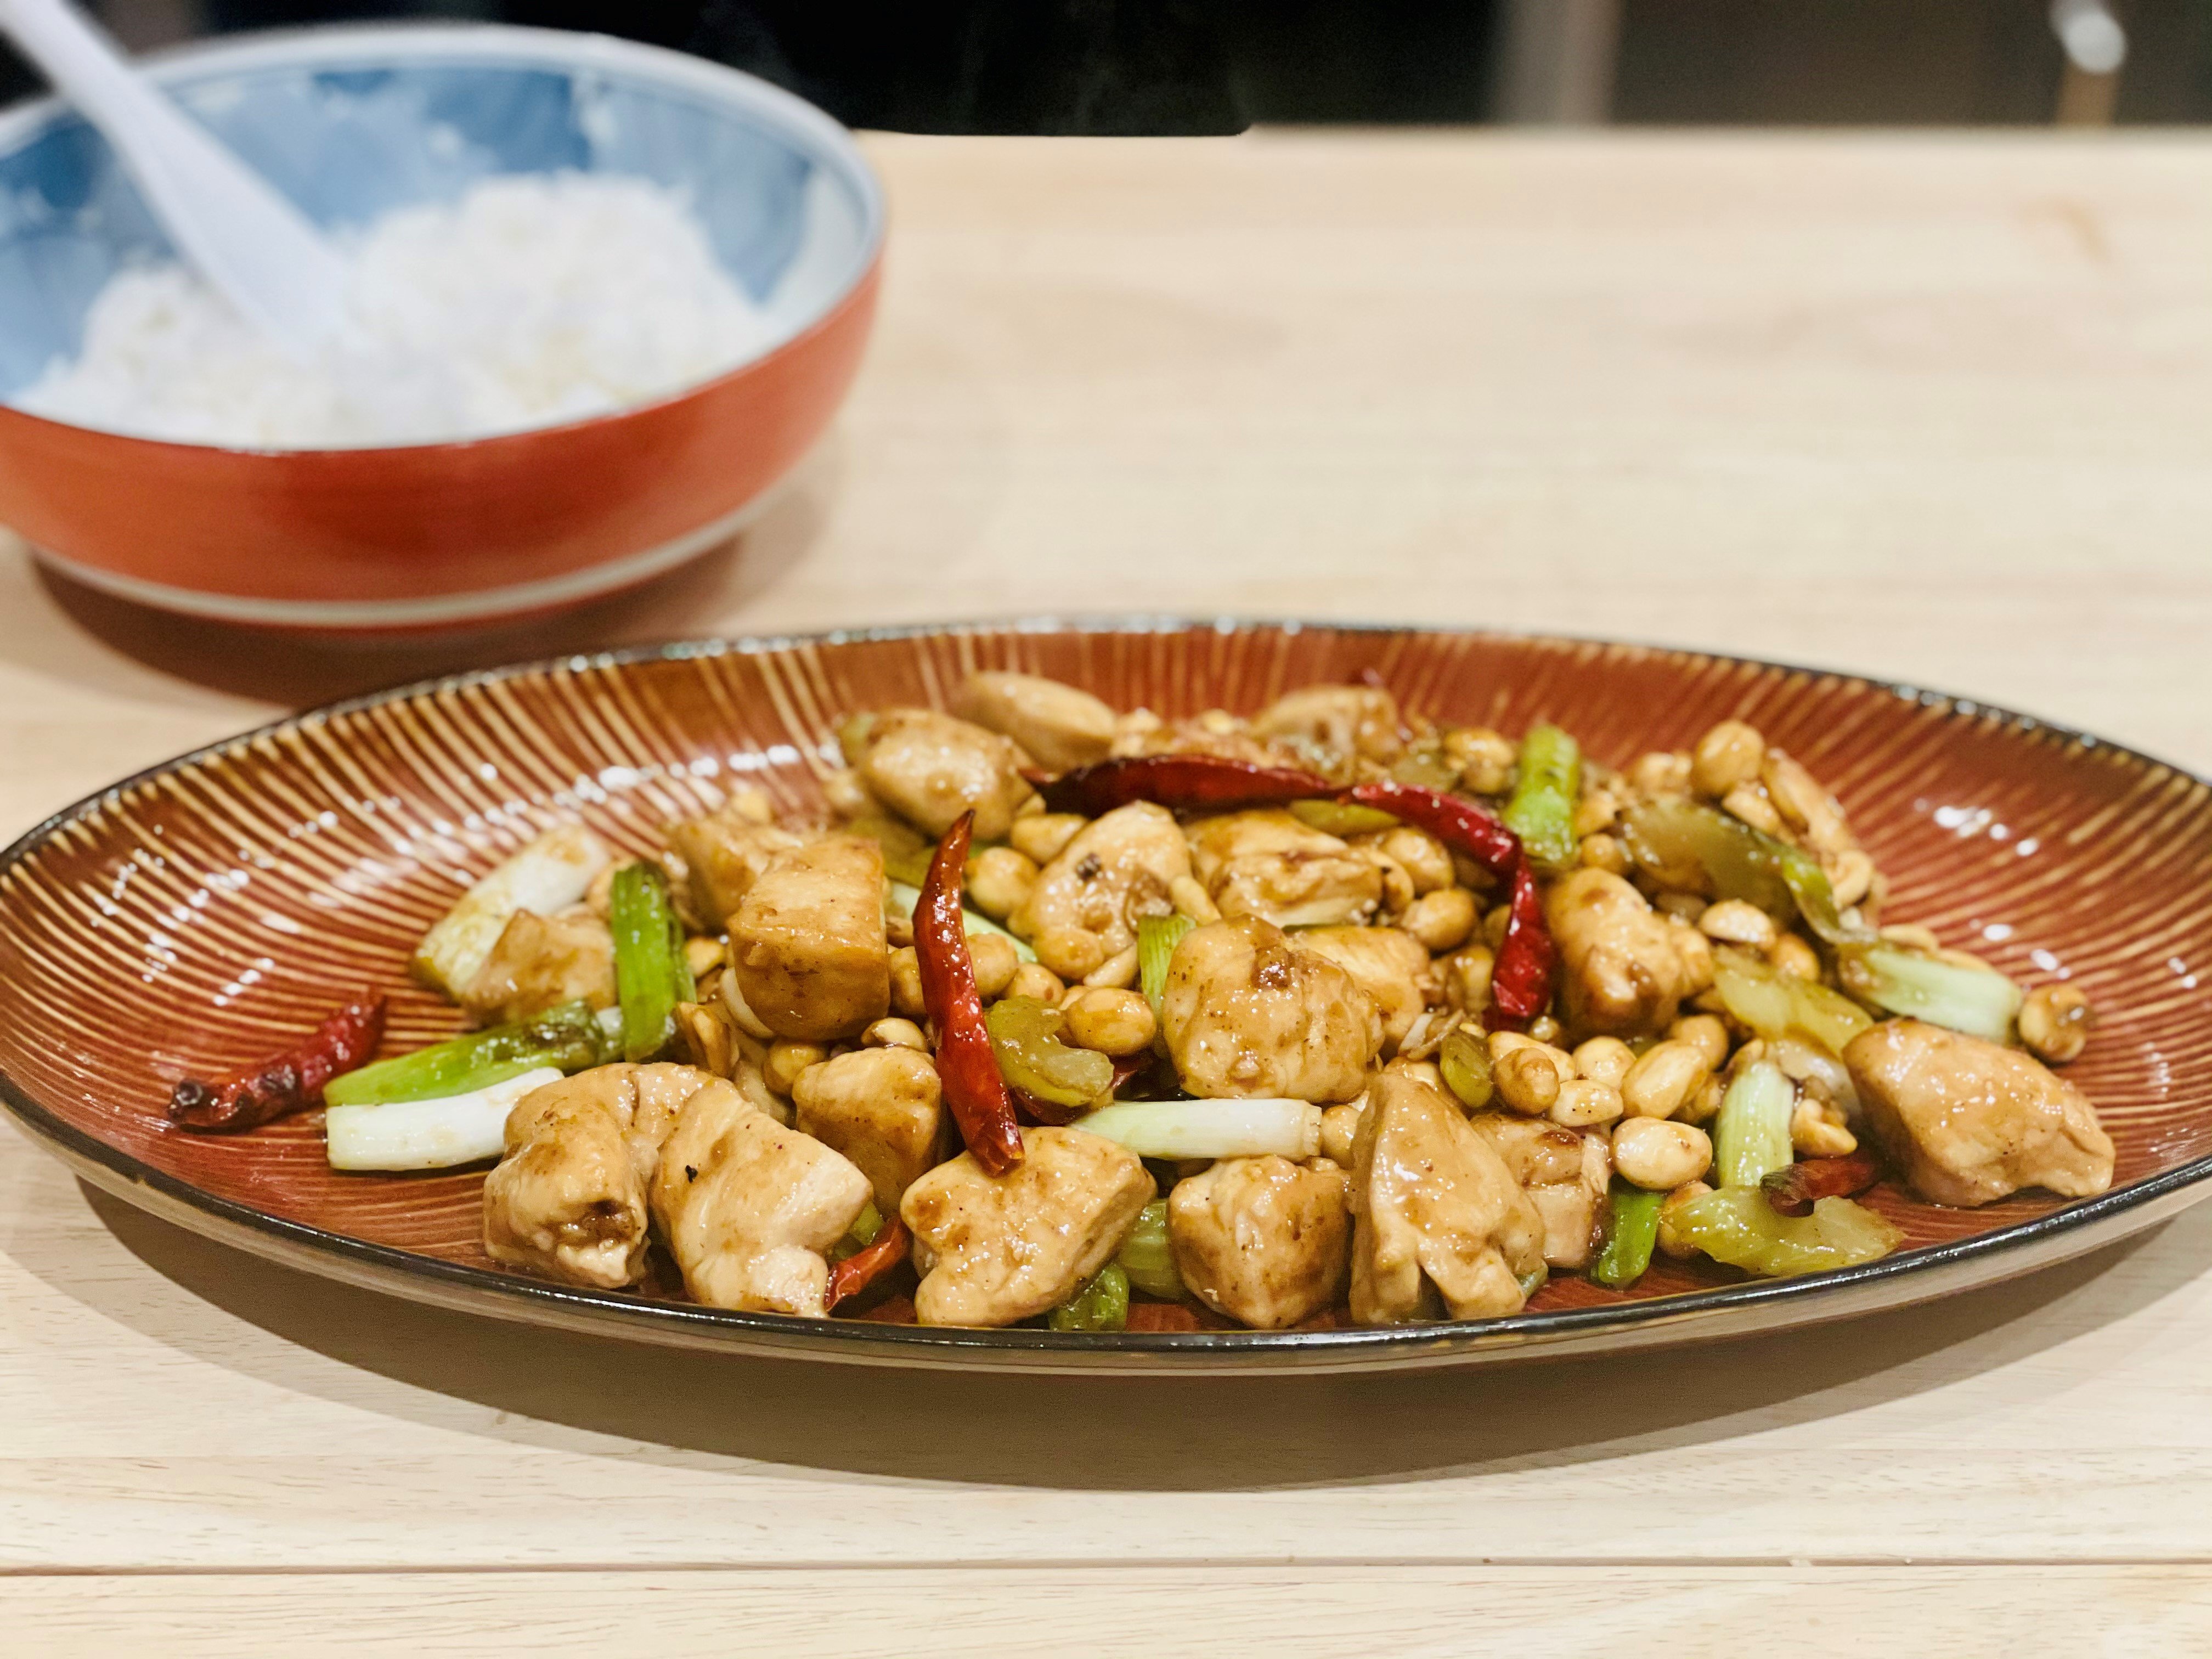 Top 10 Asian Kitchen Essentials - Wok & Skillet